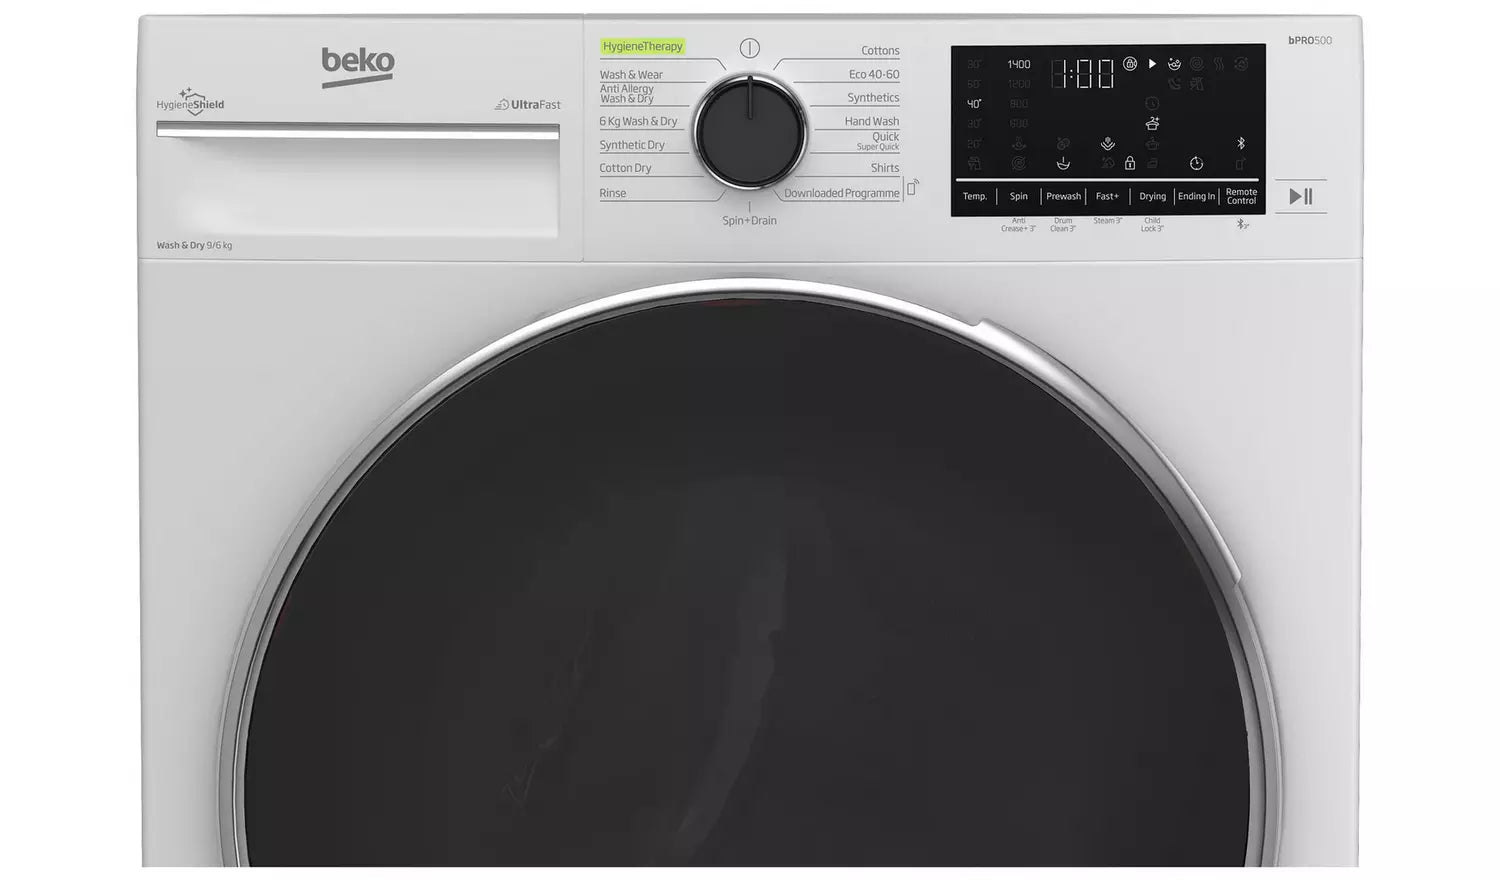 Beko UltraFast B3D59644UW 9Kg / 6Kg Washer Dryer with 1400 rpm - White (EX-DISPLAY/A)